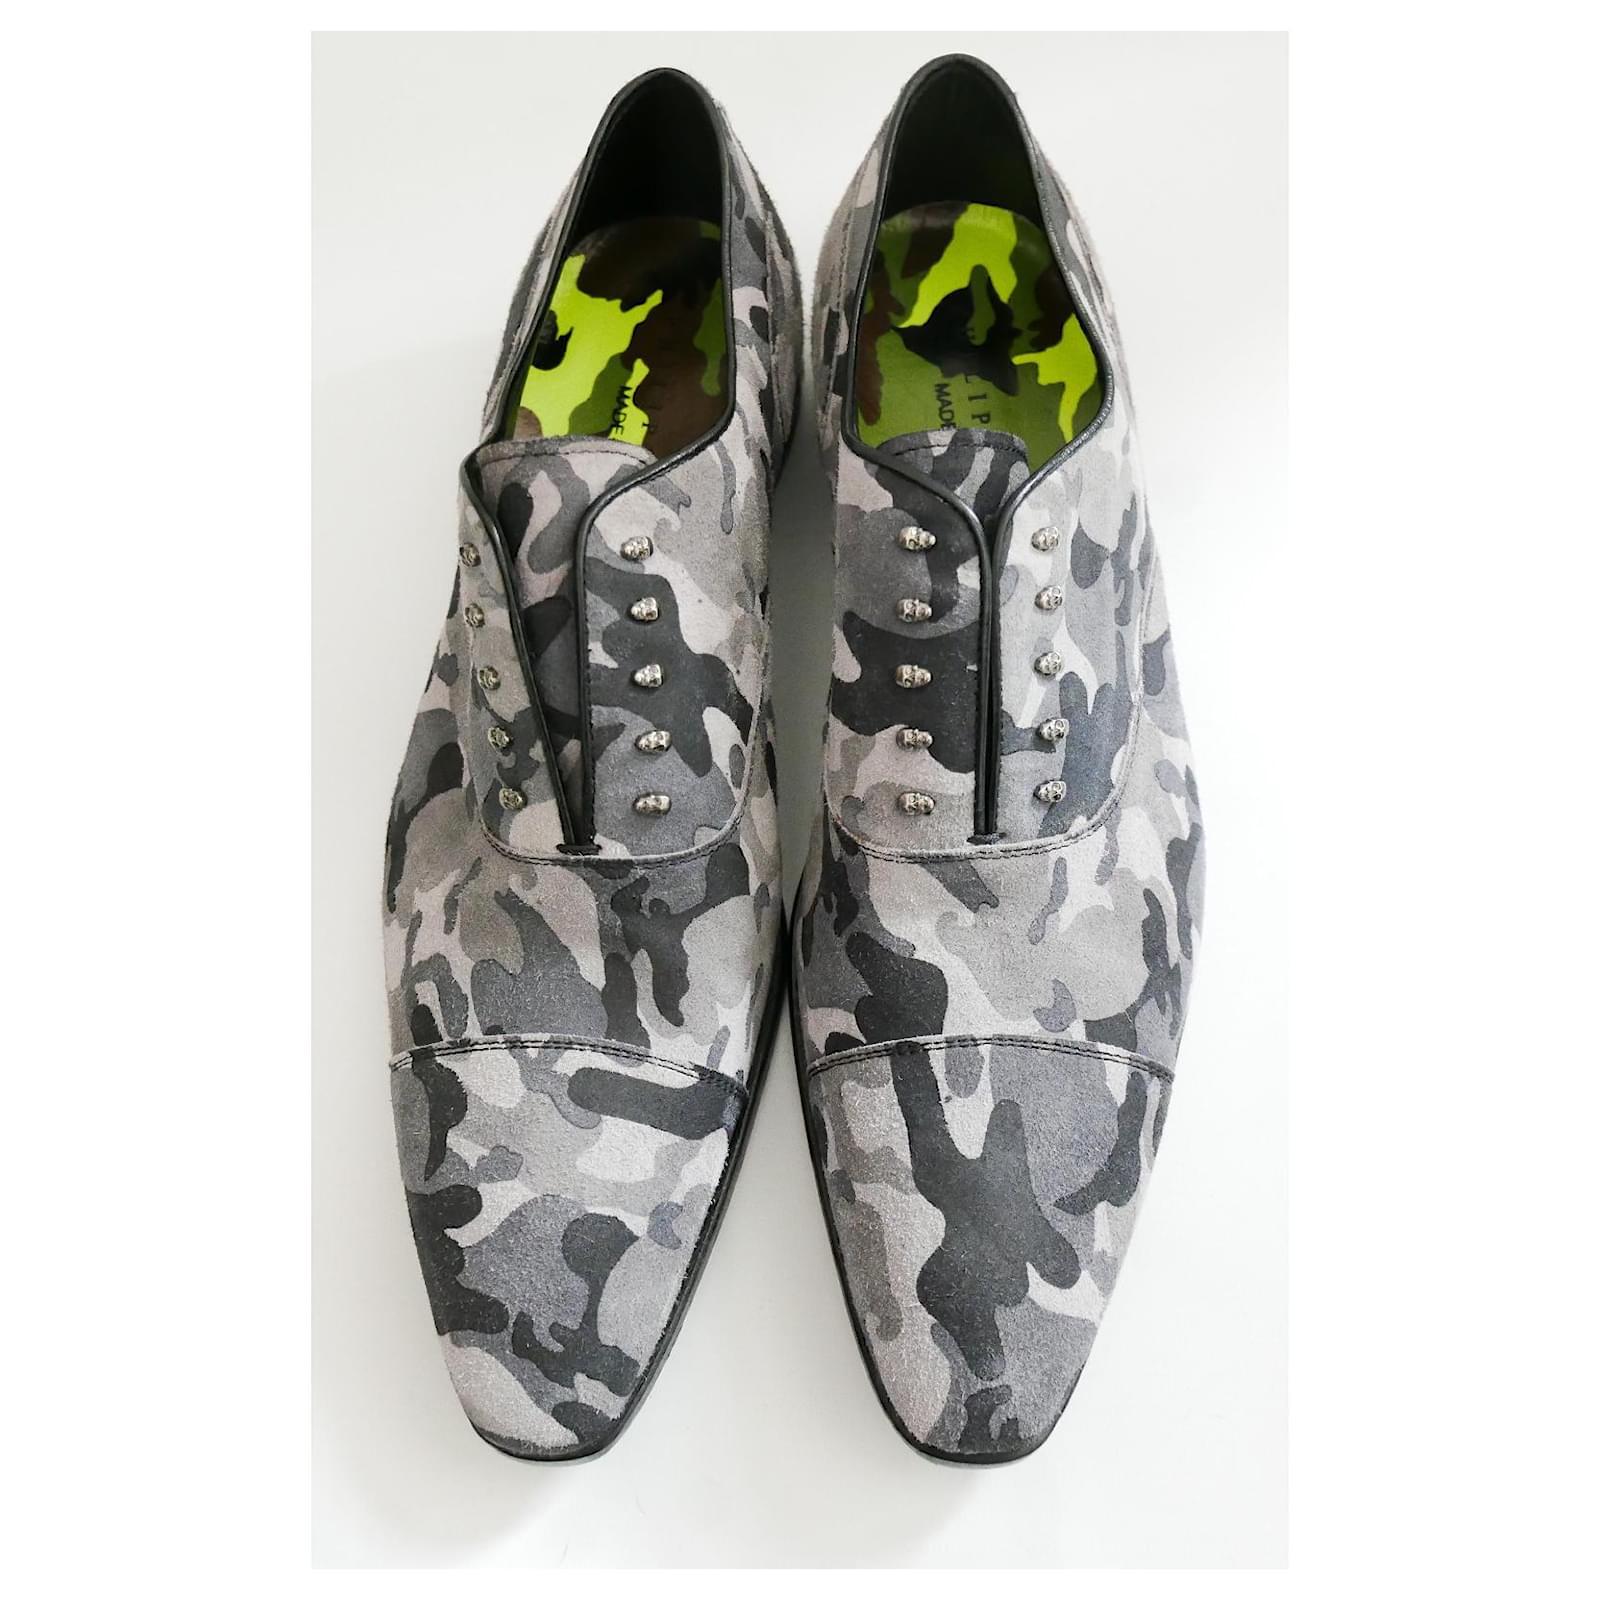 Super cool Camouflage Skull Class Shoes from Philipp Plein's SS14 Collection. Achetées pour £700 et non portées avec étiquettes autocollantes, boîte et tissu imprimé. Réalisées en daim brossé imprimé camouflage gris et bordées de cuir noir, elles